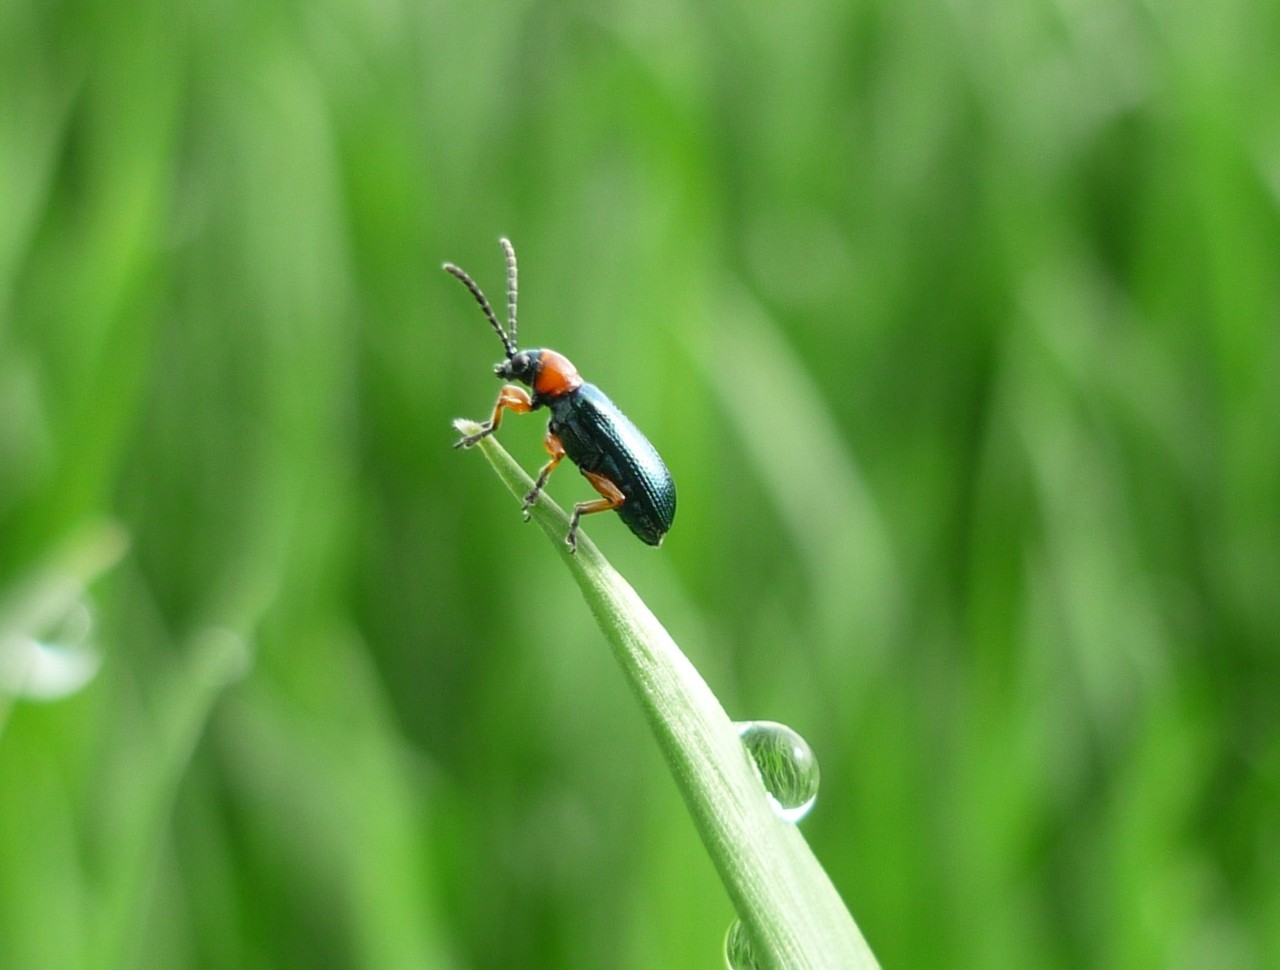 Ein Getreidehähnchen, ein 5-6 Millimeter großer Käfer mit rötlichem Halsschild, auf einem Getreideblatt.